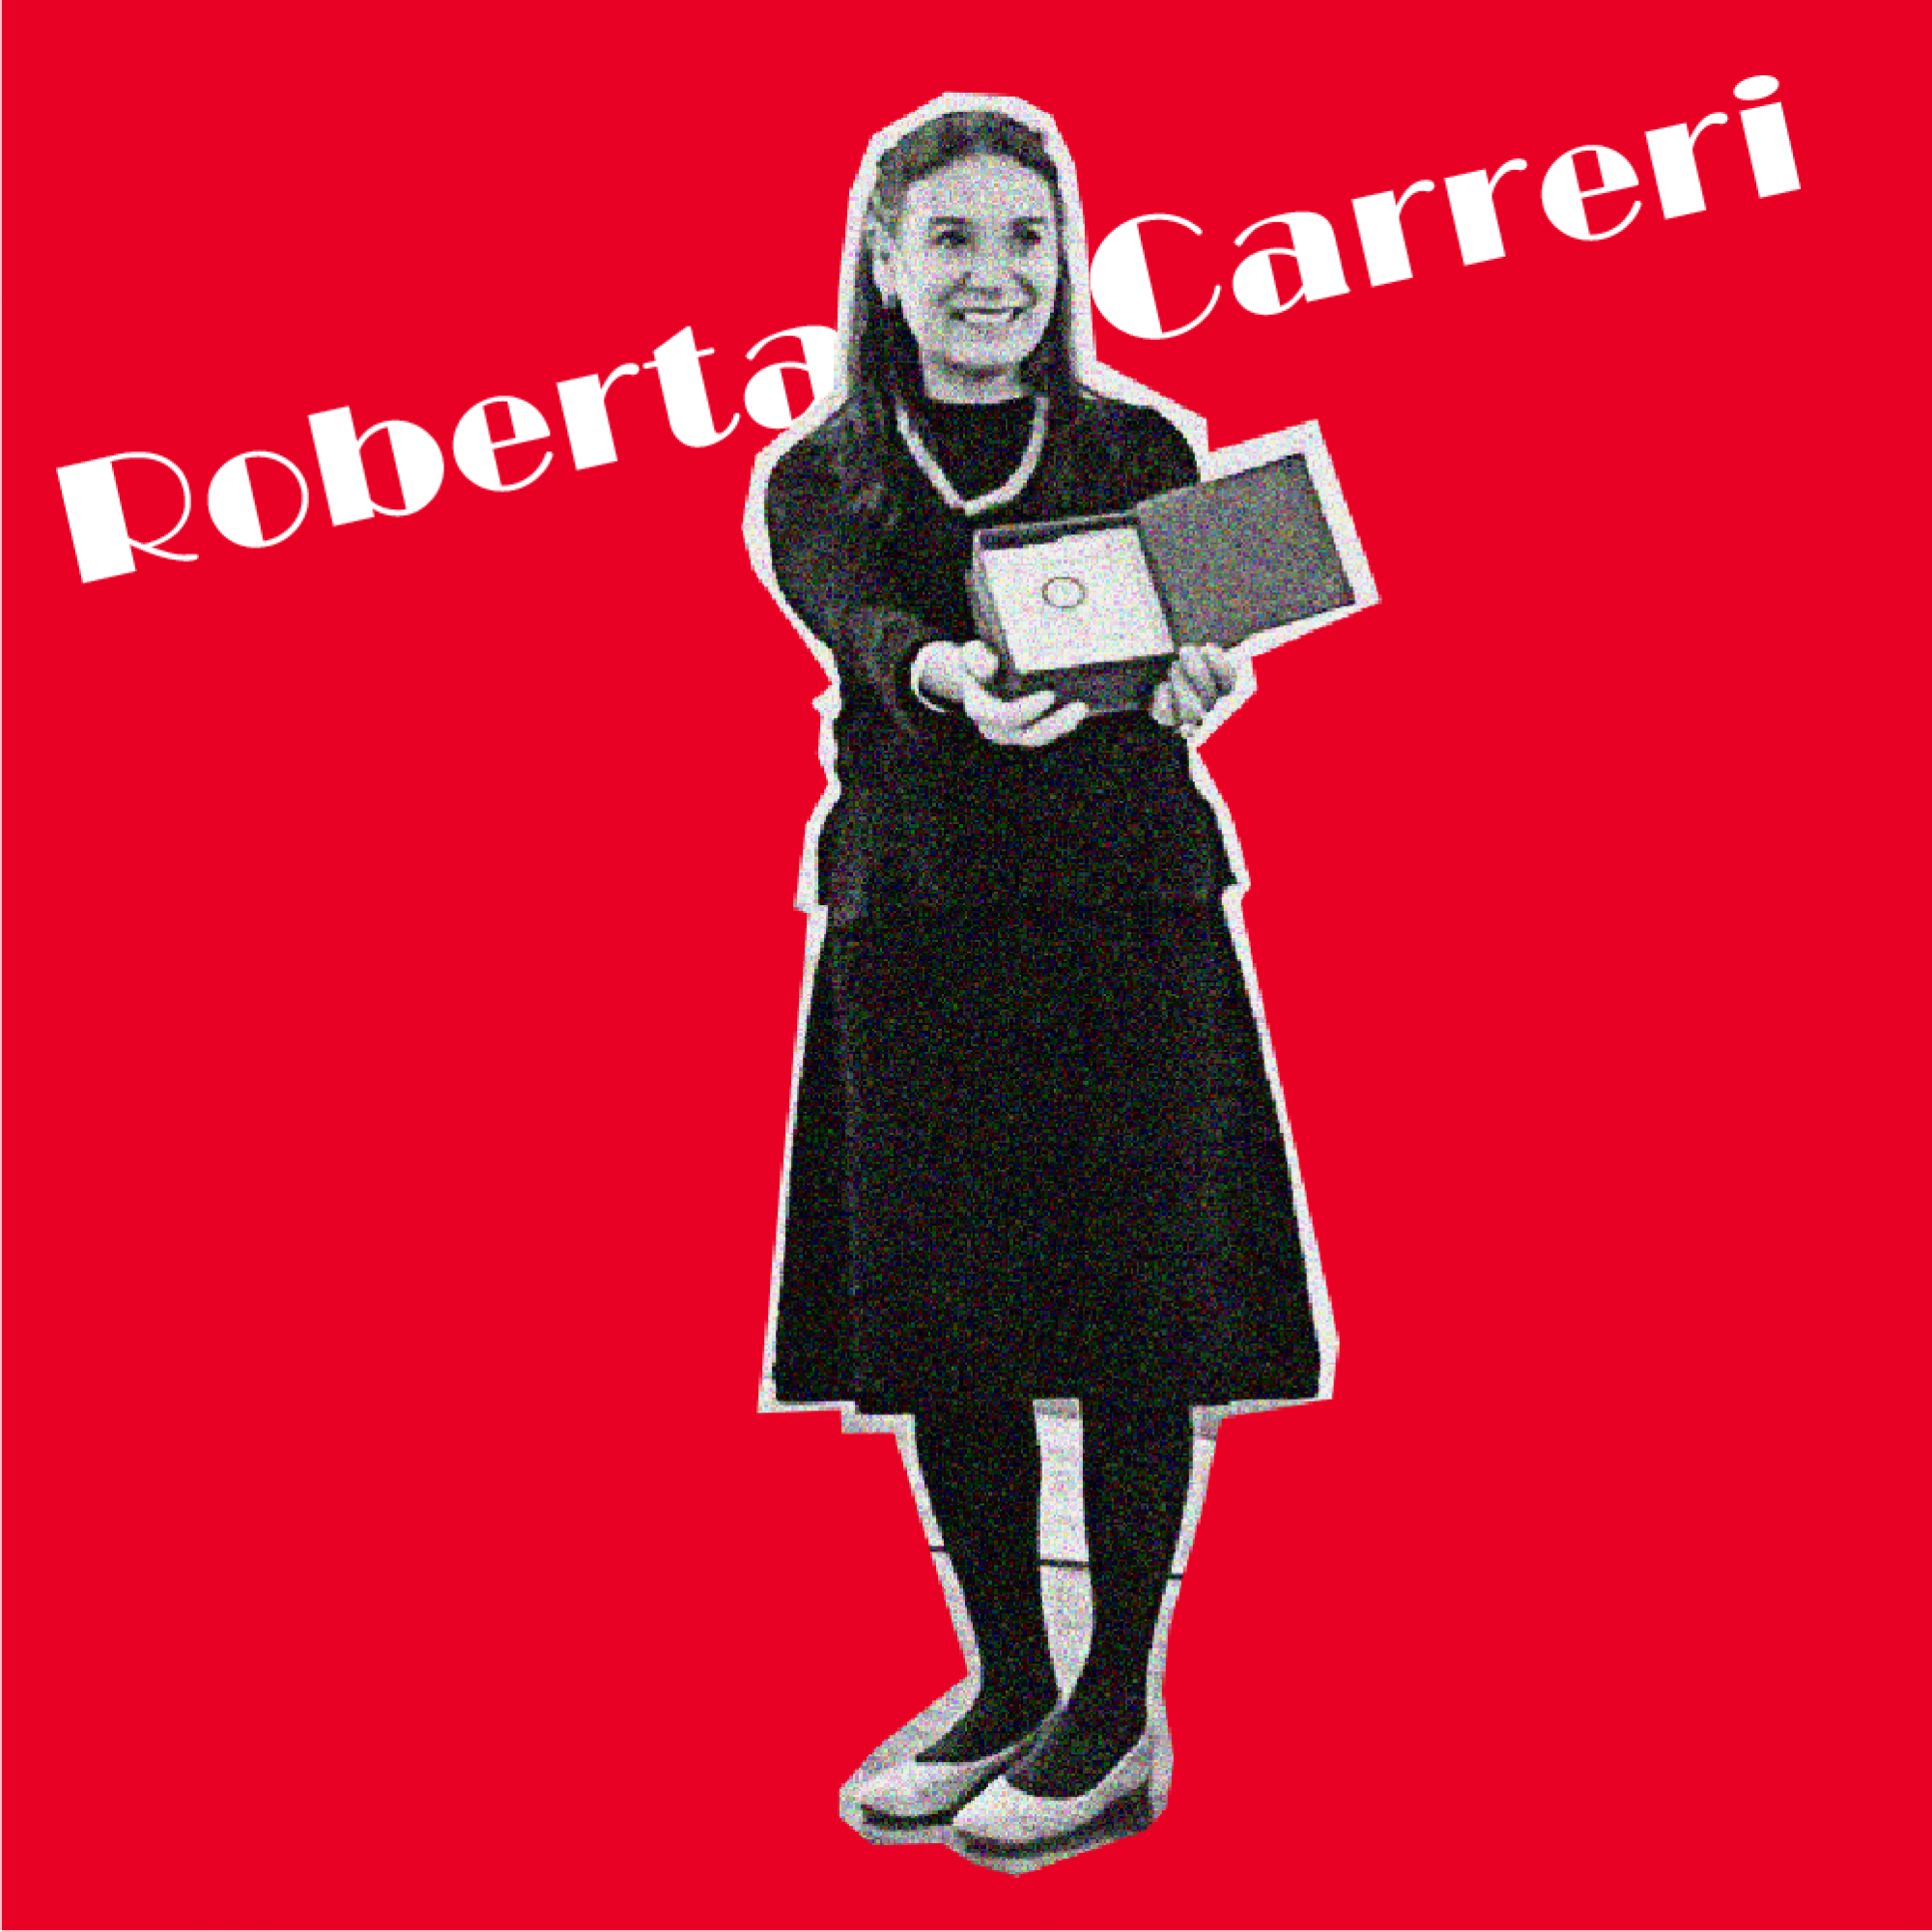 Roberta Carreri modtager ærespris